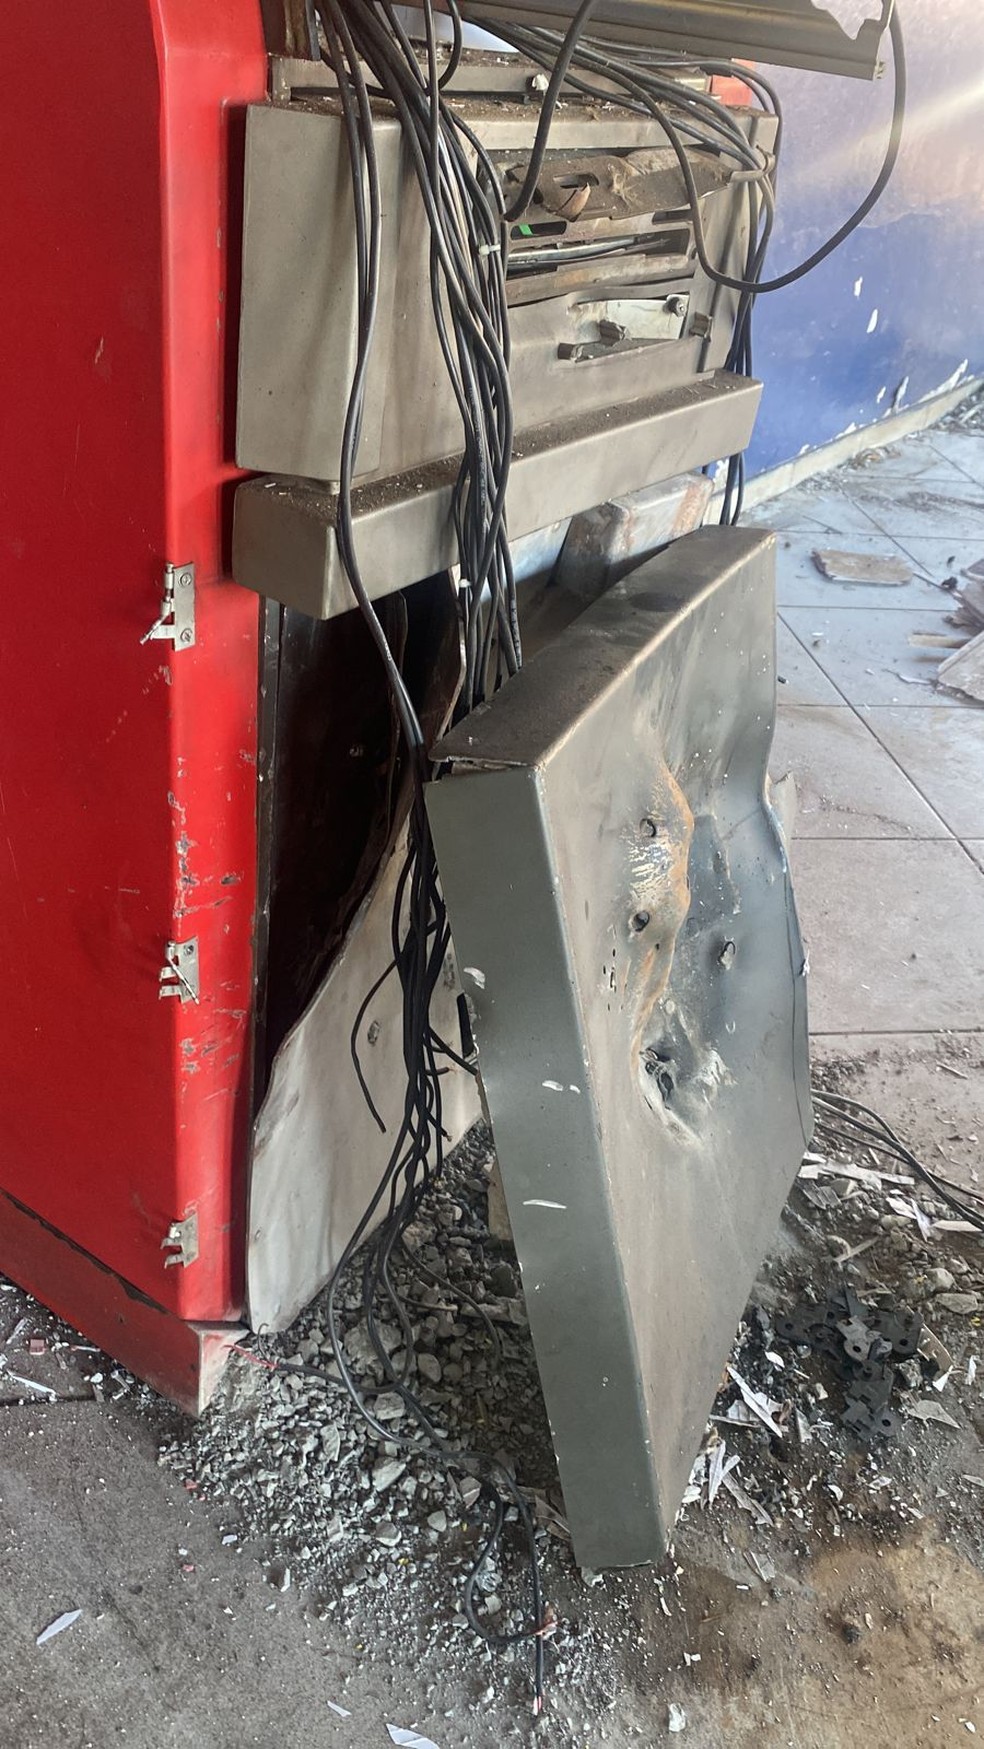 Caixa eletrônico explodido em Atibaia, SP — Foto: Divulgação/PM